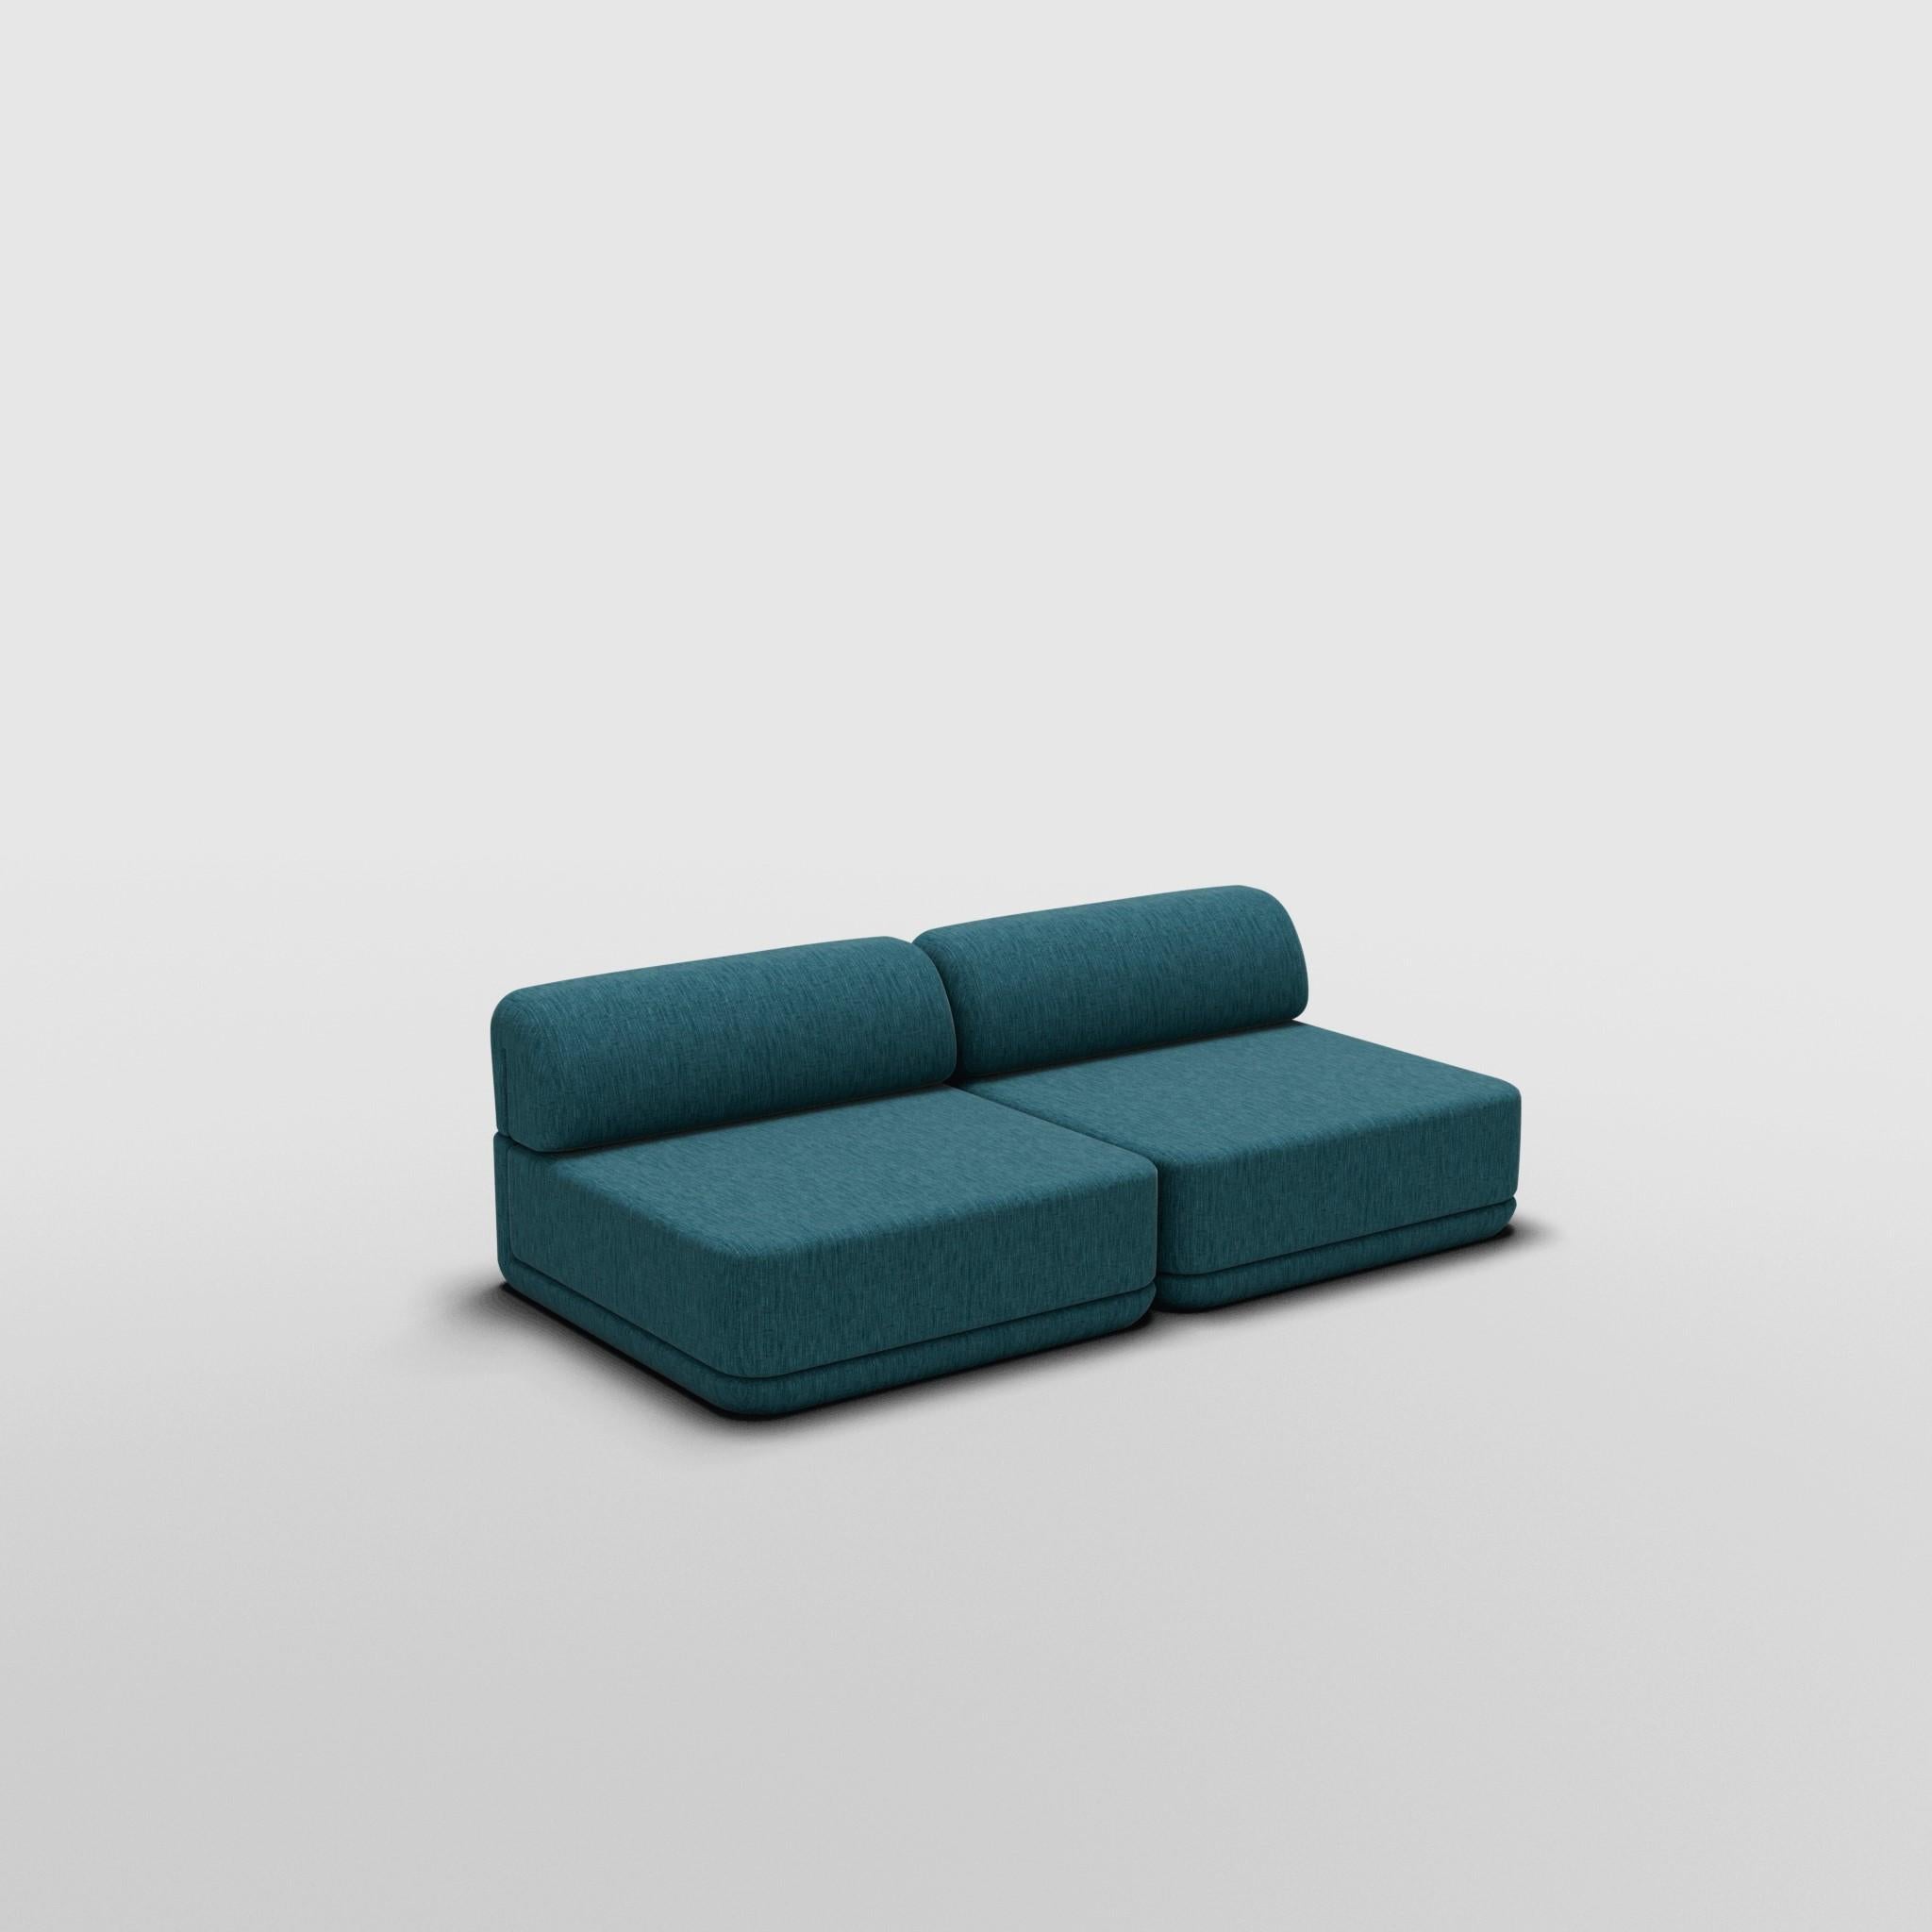 Lounge Set - Inspiriert von italienischen Luxusmöbeln der 70er Jahre

Entdecken Sie das Cube Sofa, wo Kunst auf Anpassungsfähigkeit trifft. Das skulpturale Design und der individuell anpassbare Komfort schaffen unendliche Möglichkeiten für Ihren